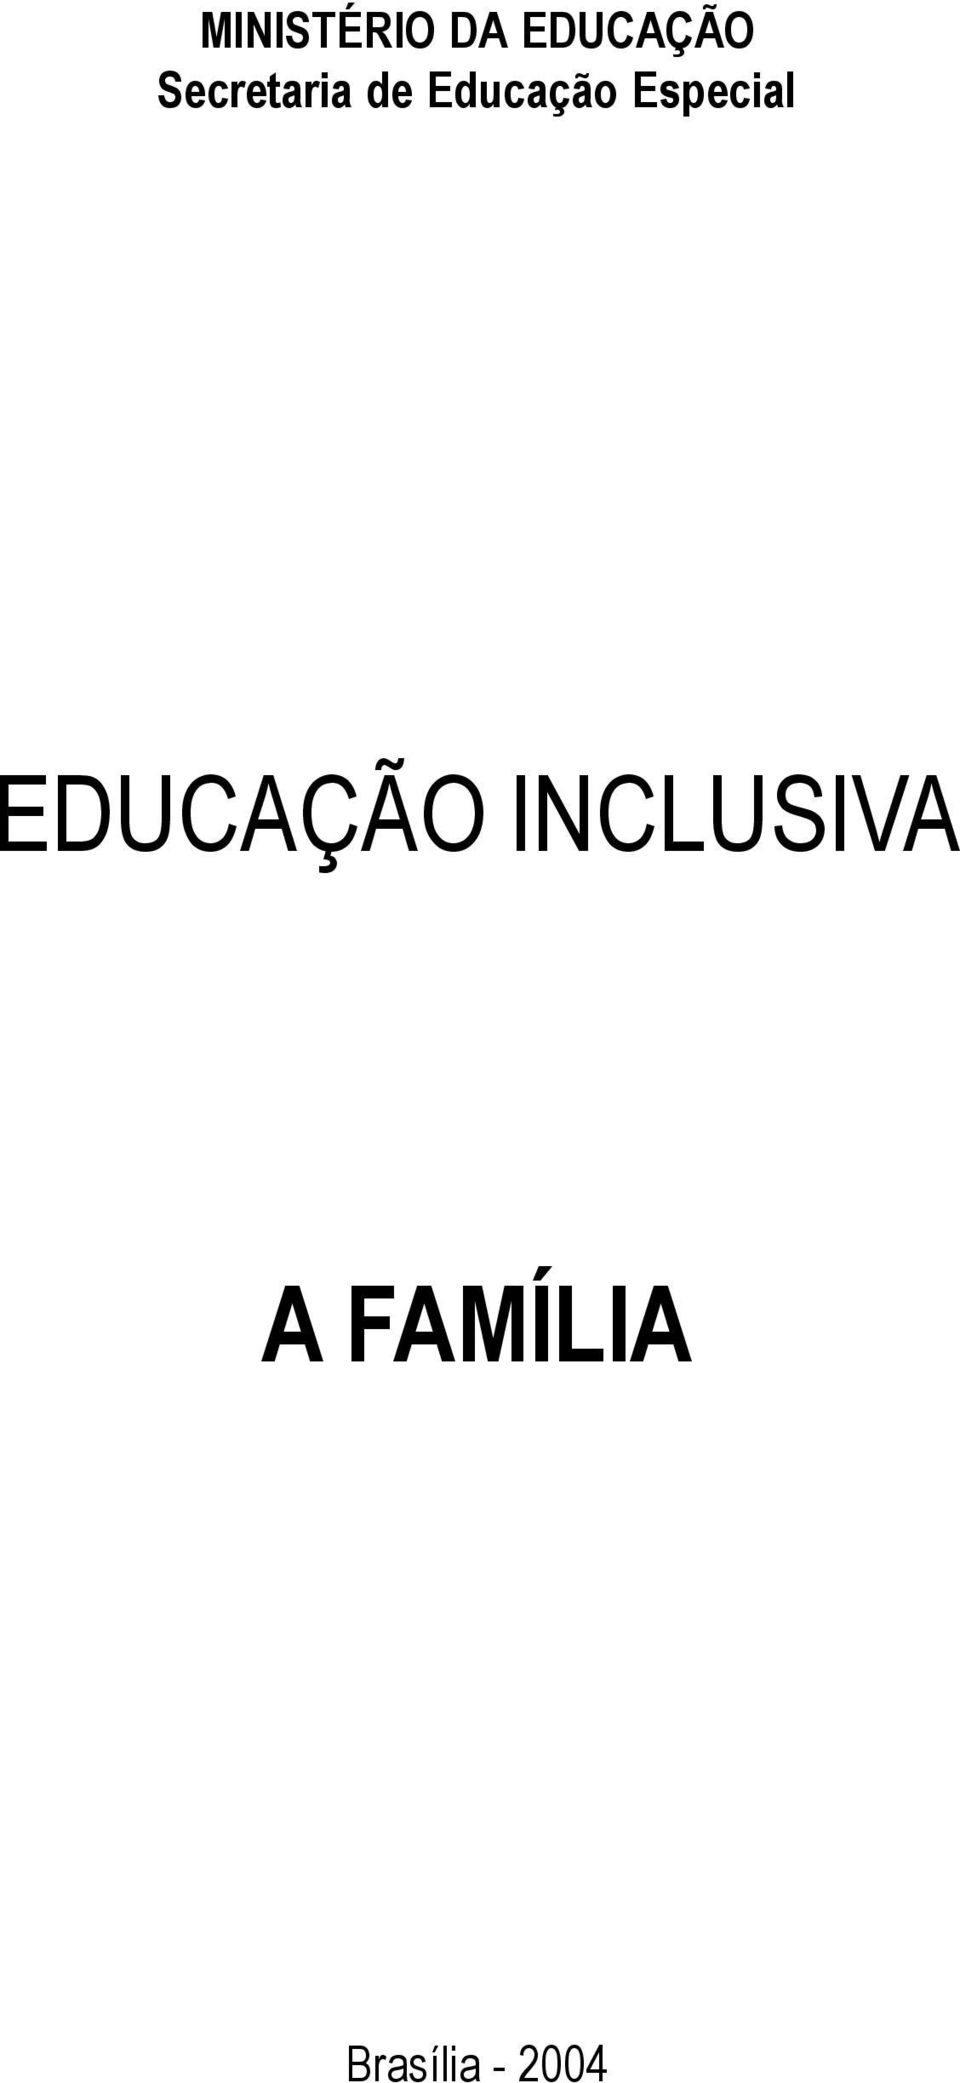 Especial EDUCAÇÃO